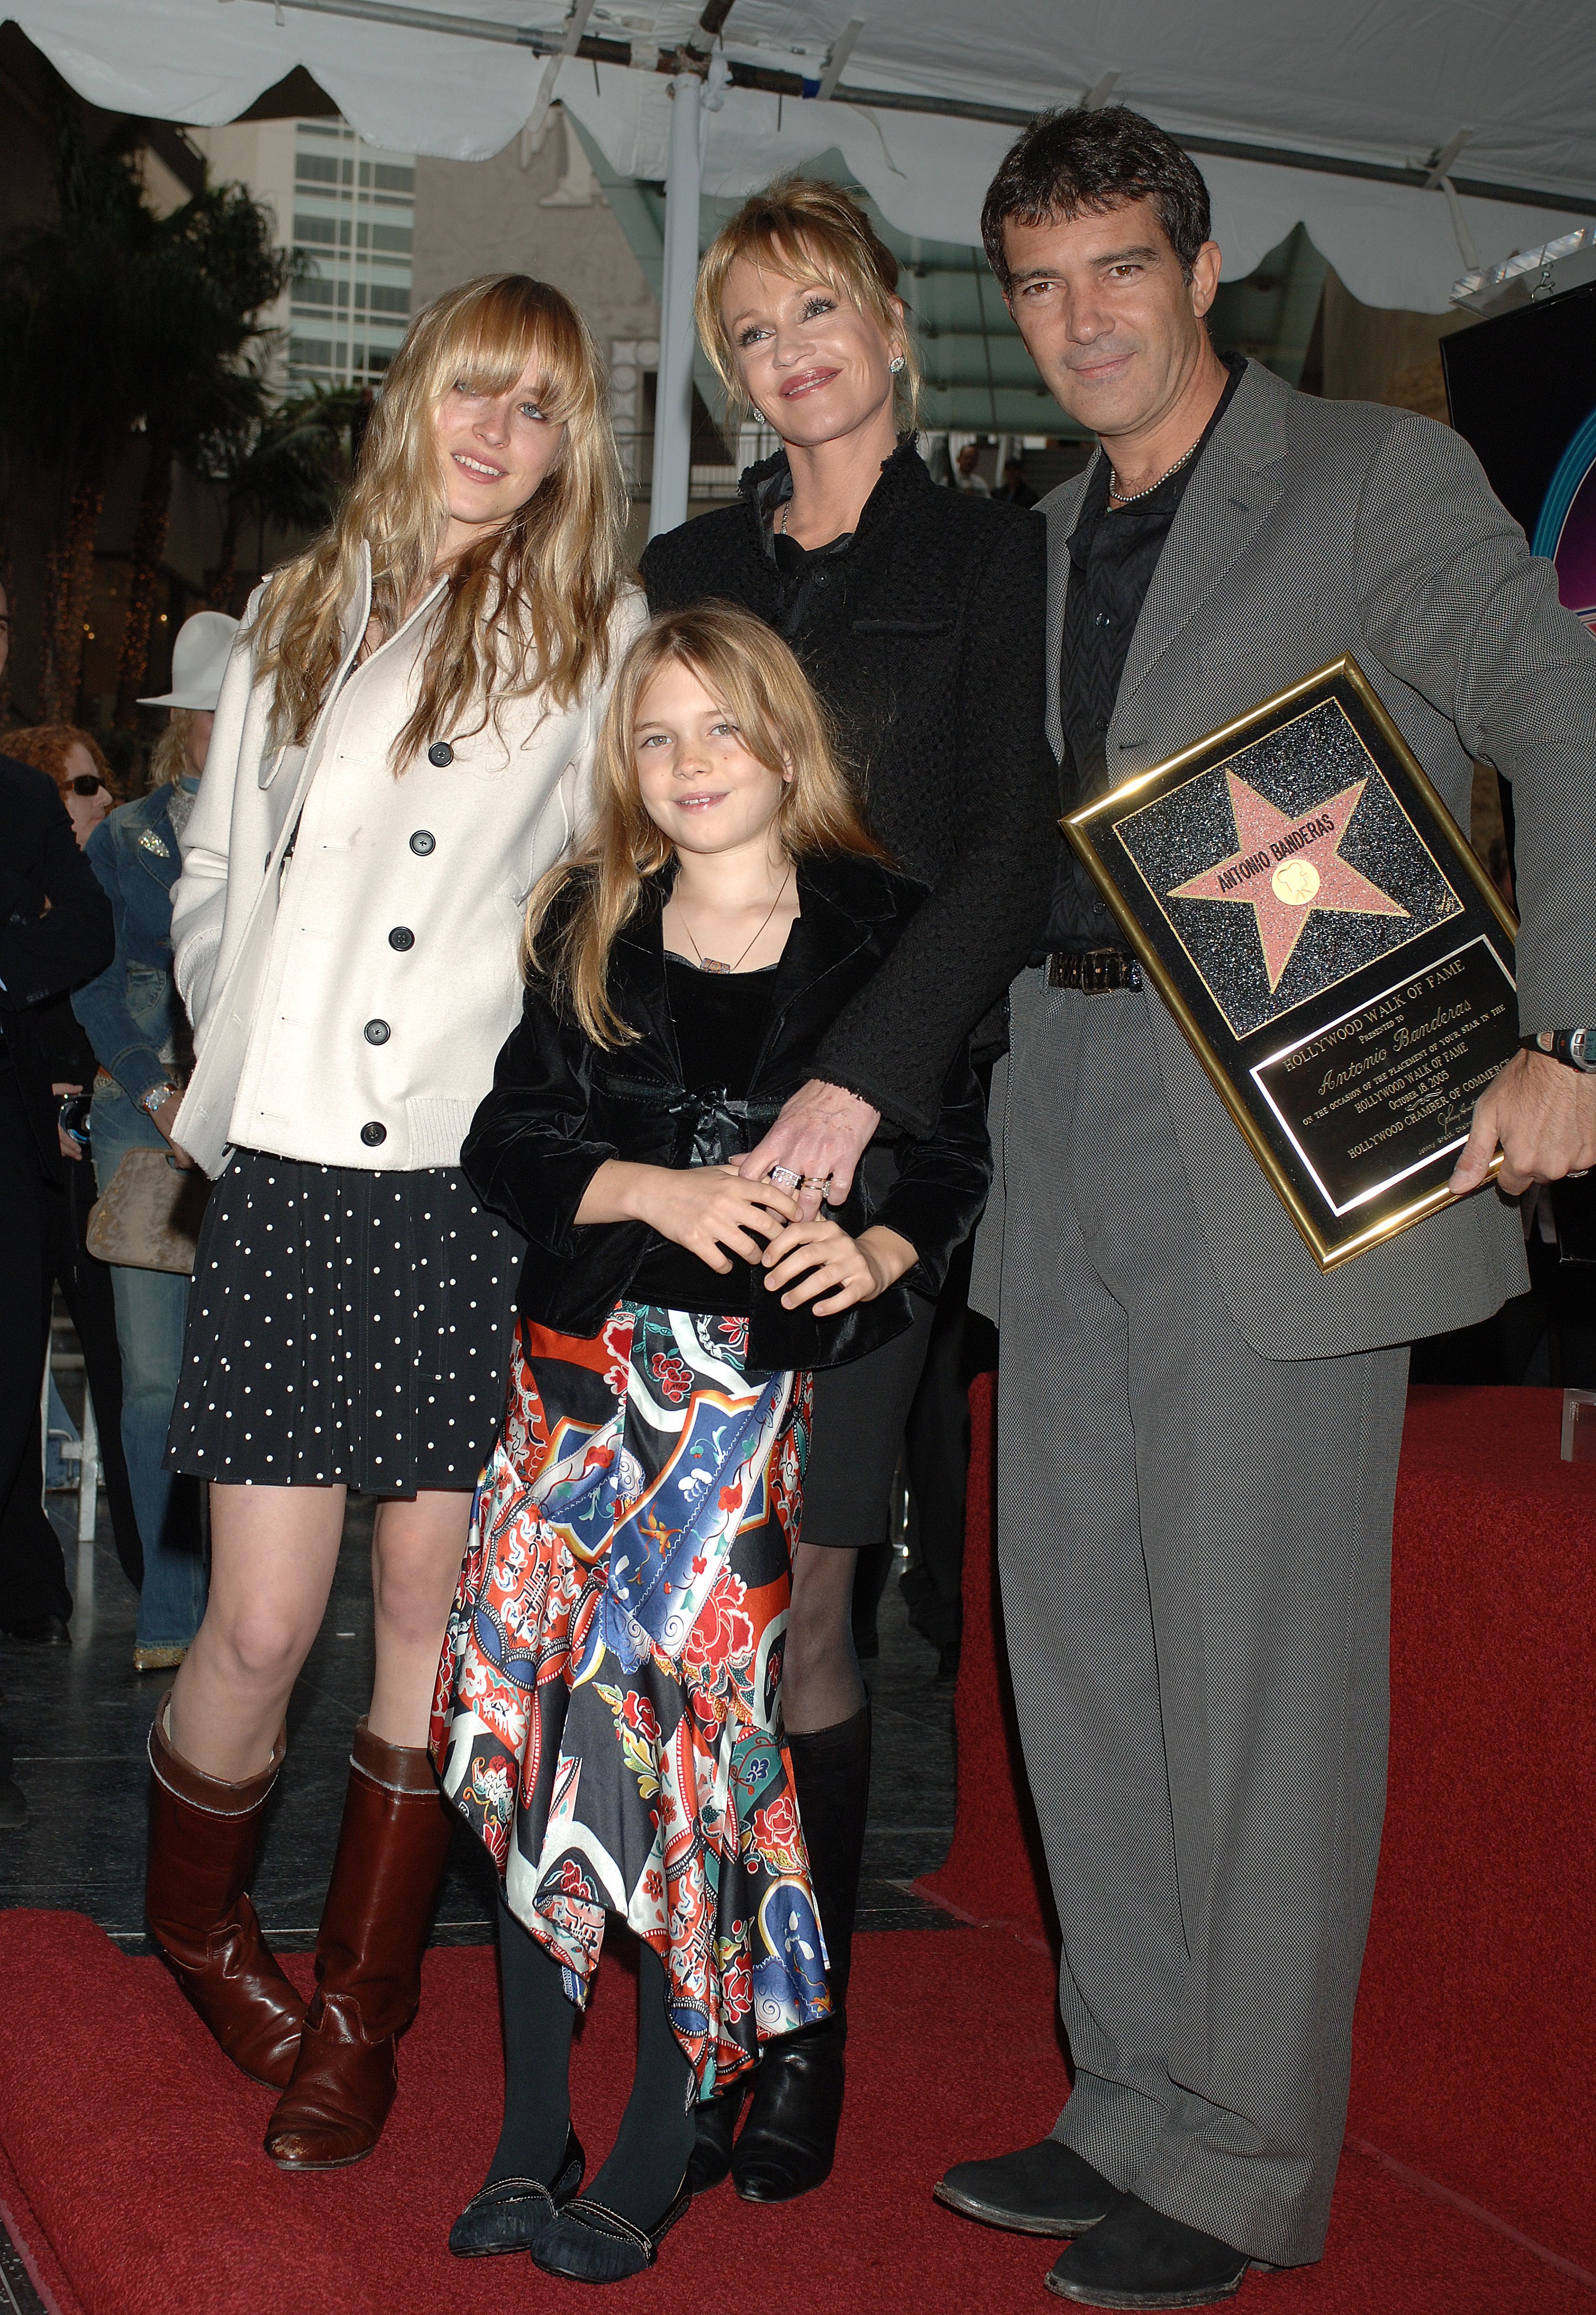 Antonio Banderas und Melanie Griffith mit ihren Töchtern Stella Banderas und Dakota Johnson bei seiner Sternverleihung auf dem Hollywood Walk of Fame am 18. Oktober 2005 ┃Quelle: Getty Images